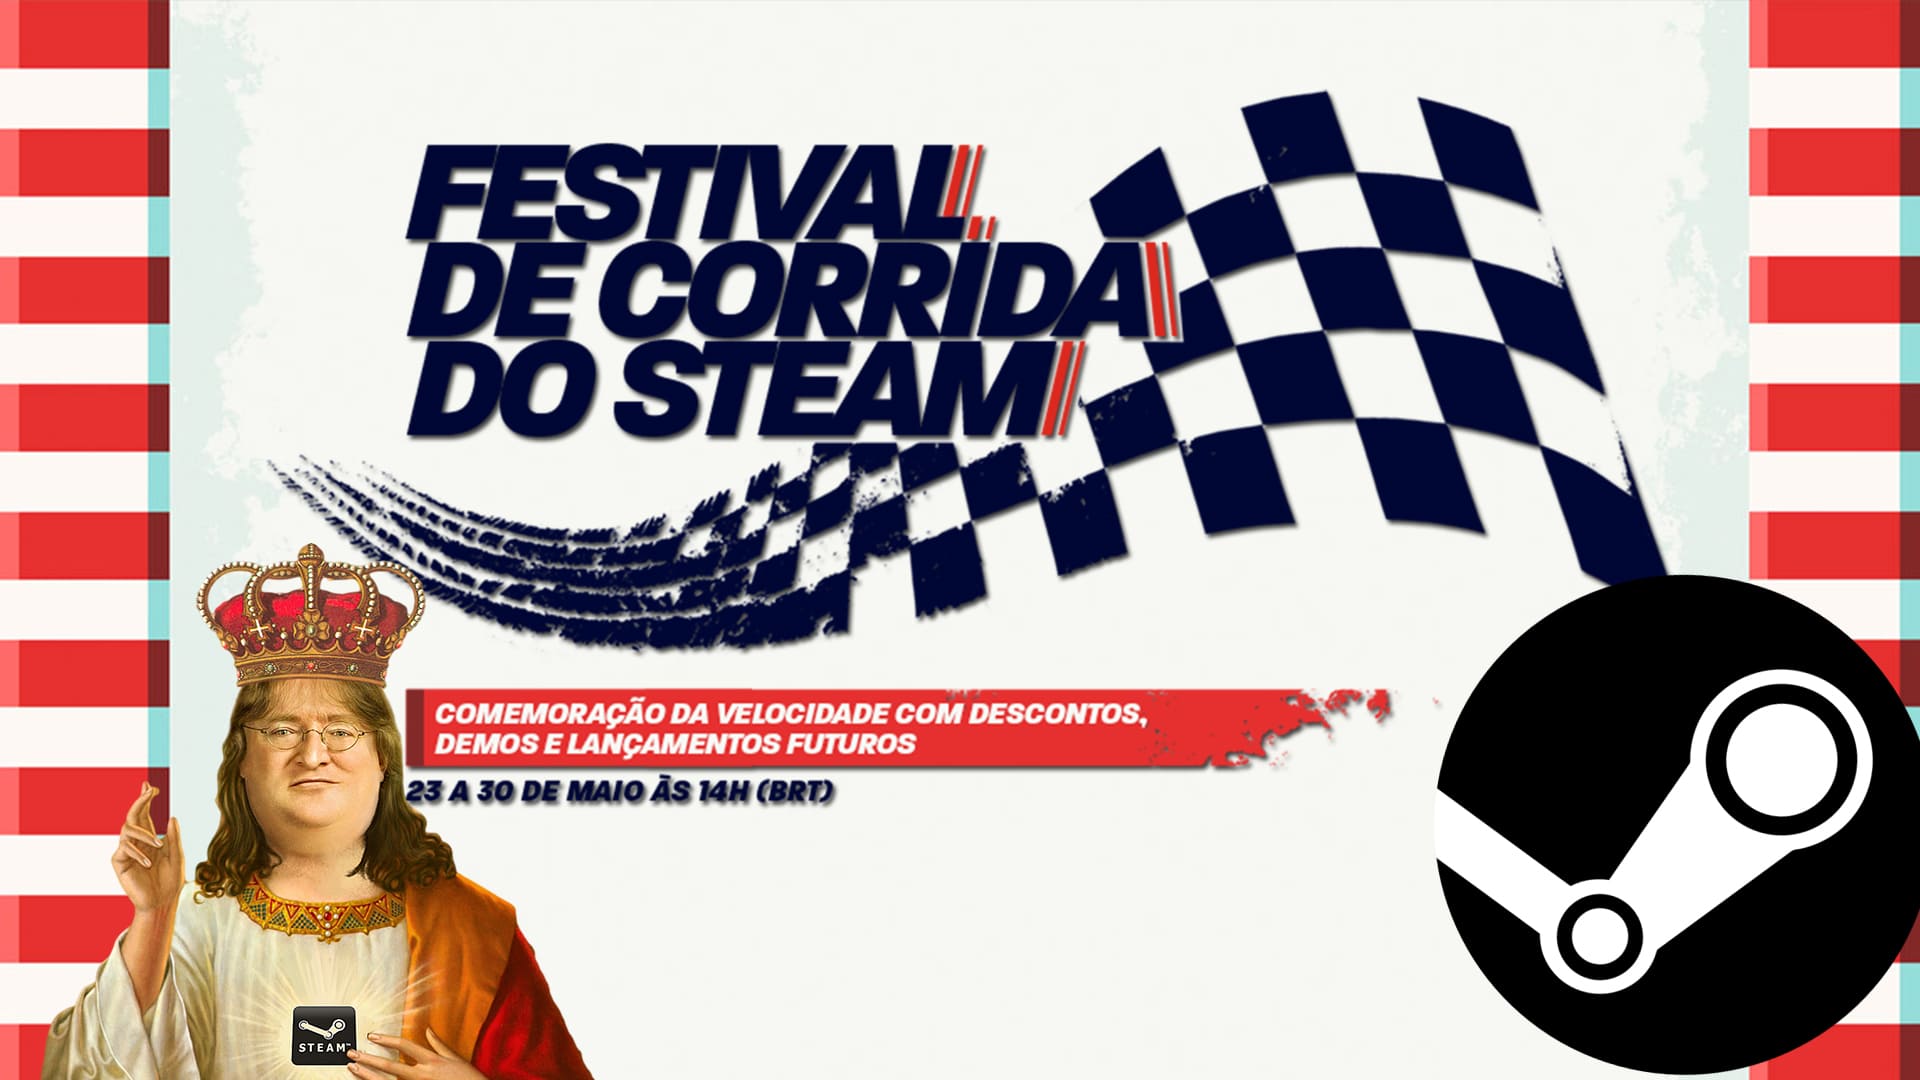 Festival Esportivo na Steam começou: ofertas e mais - Adrenaline